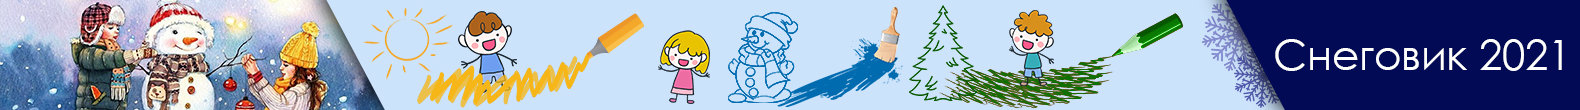 Конкурс детских рисунков "Снеговик 2021"